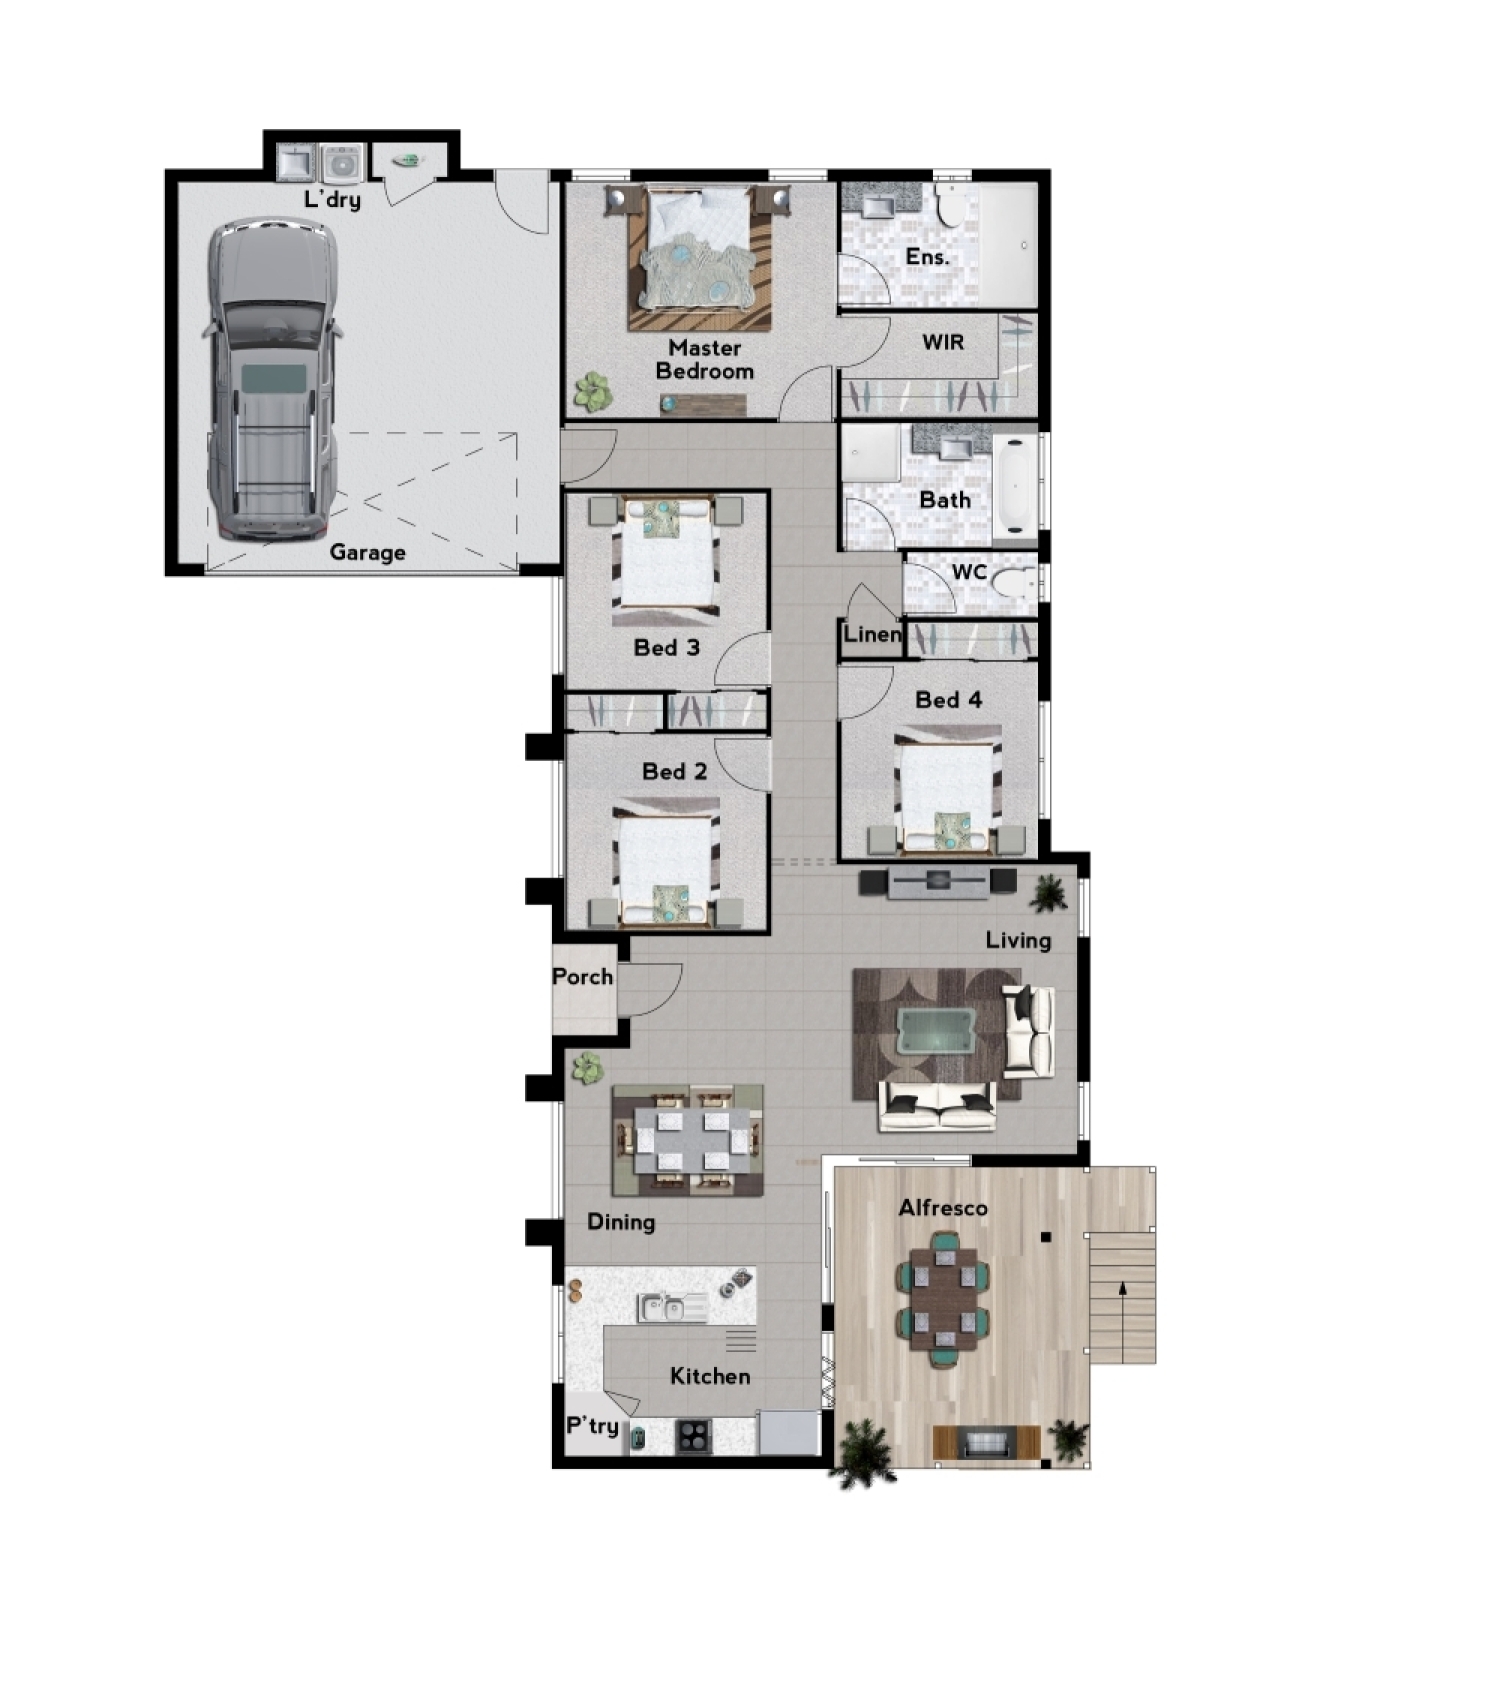 Lot 9 Amarula Place - Colour Floor Plan12